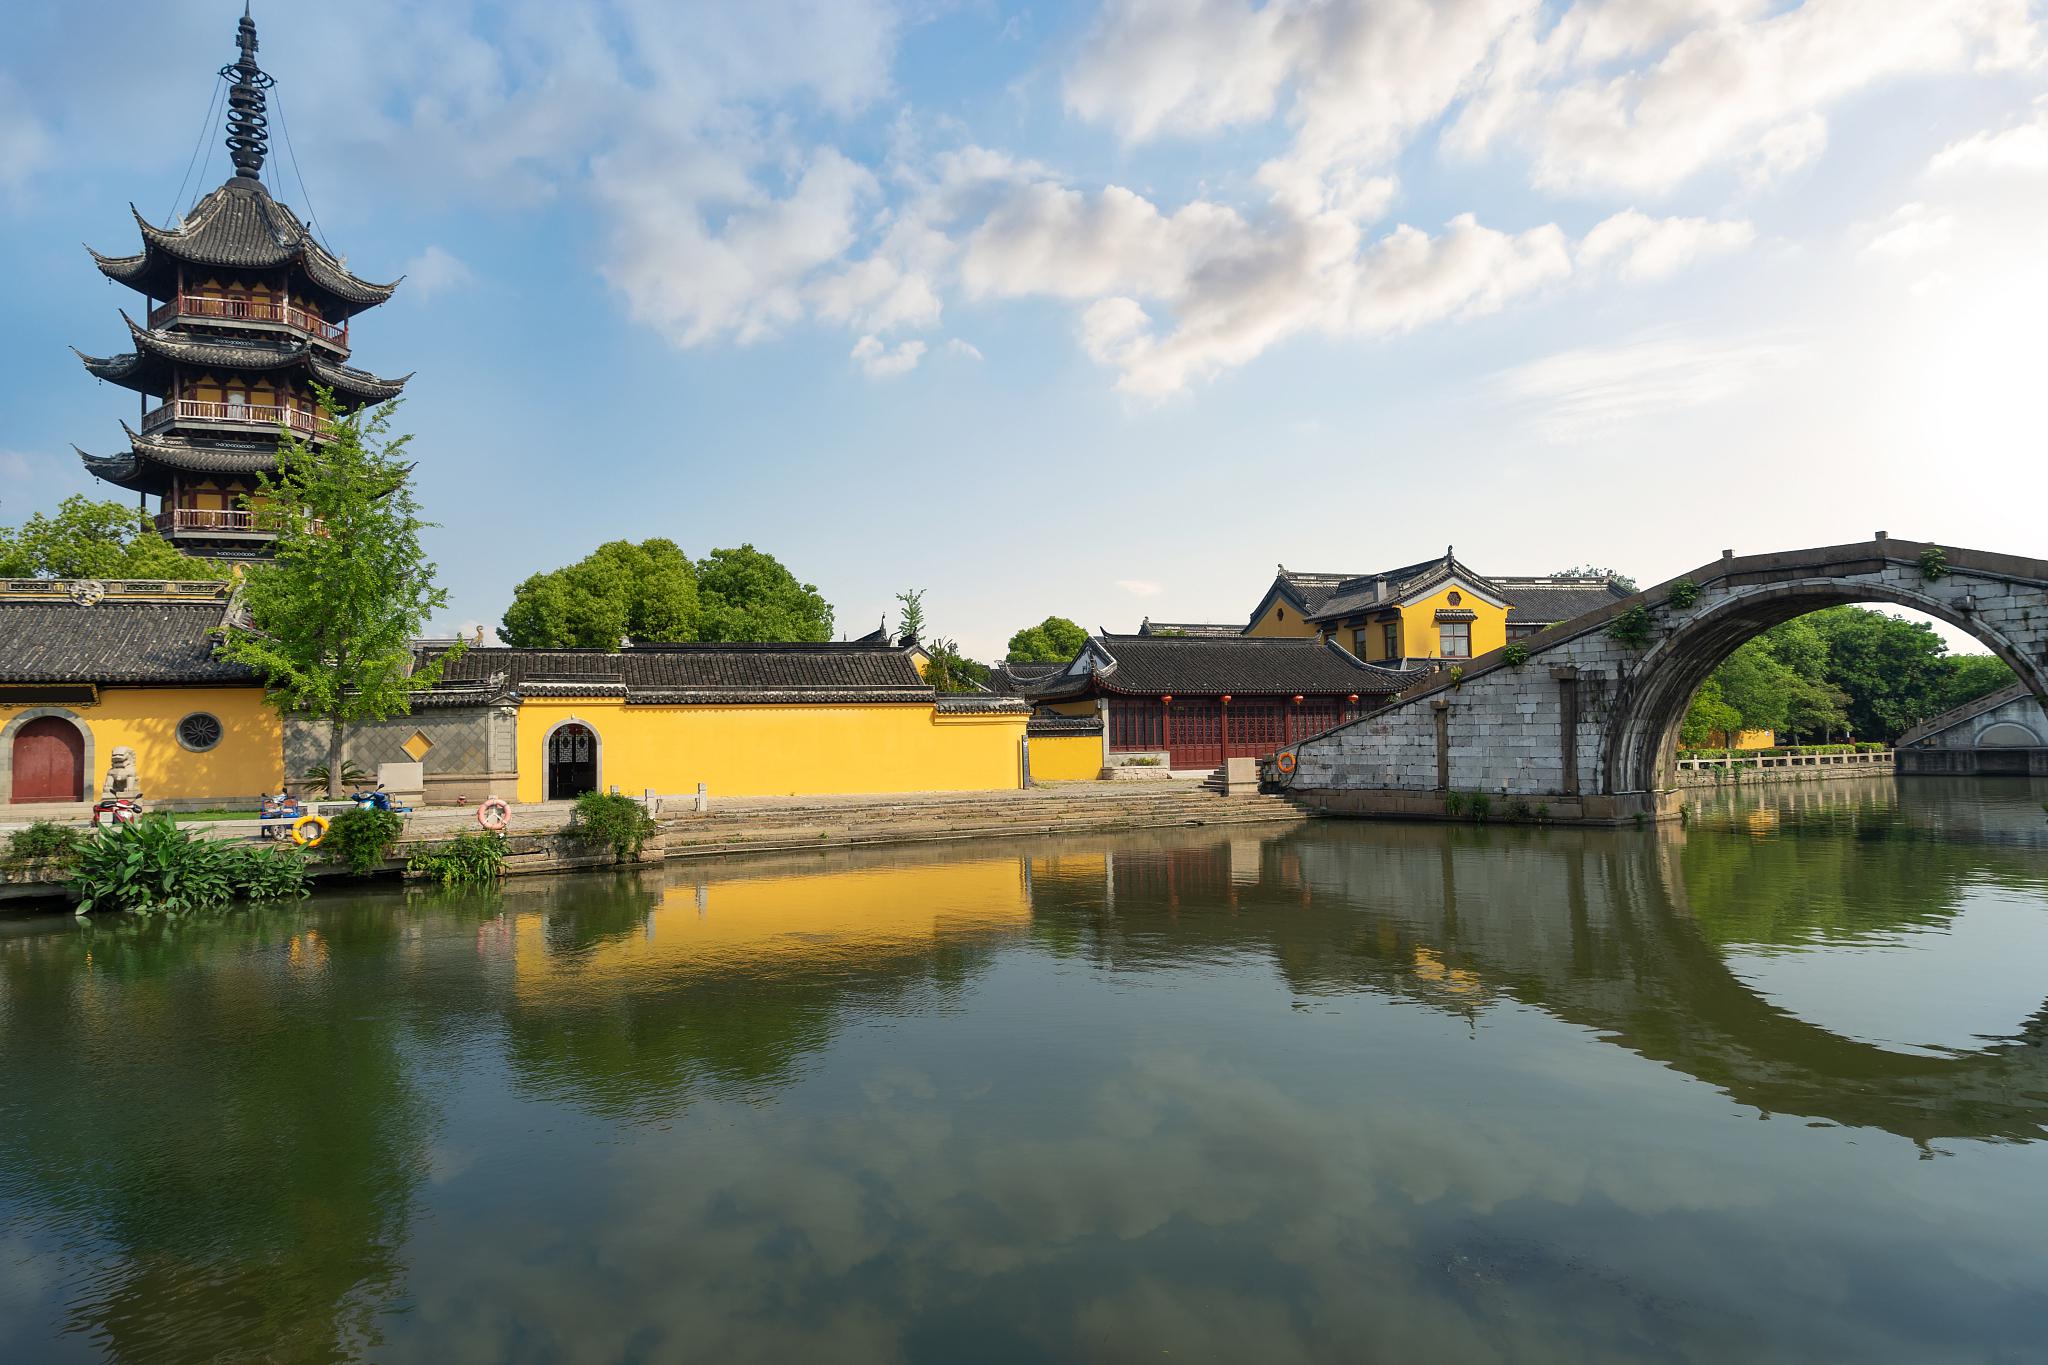 江阴:一个充满魅力的城市 江阴,位于江苏南部,背靠长江,风景如画